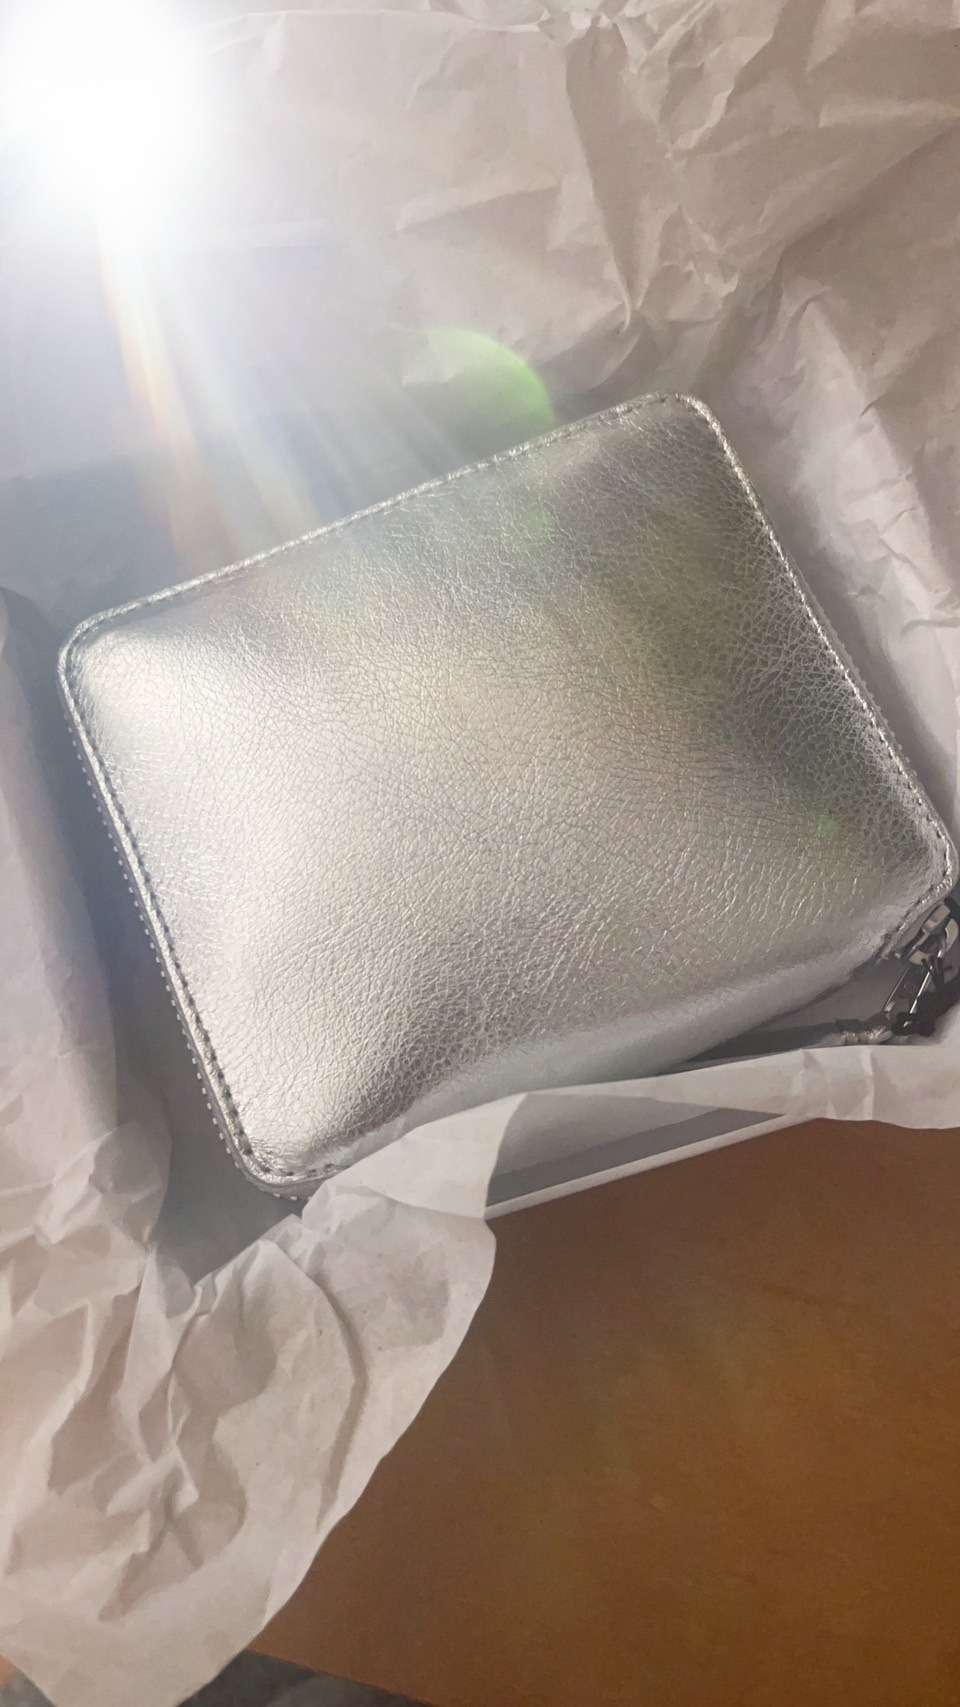 新しいお財布を買いました♪